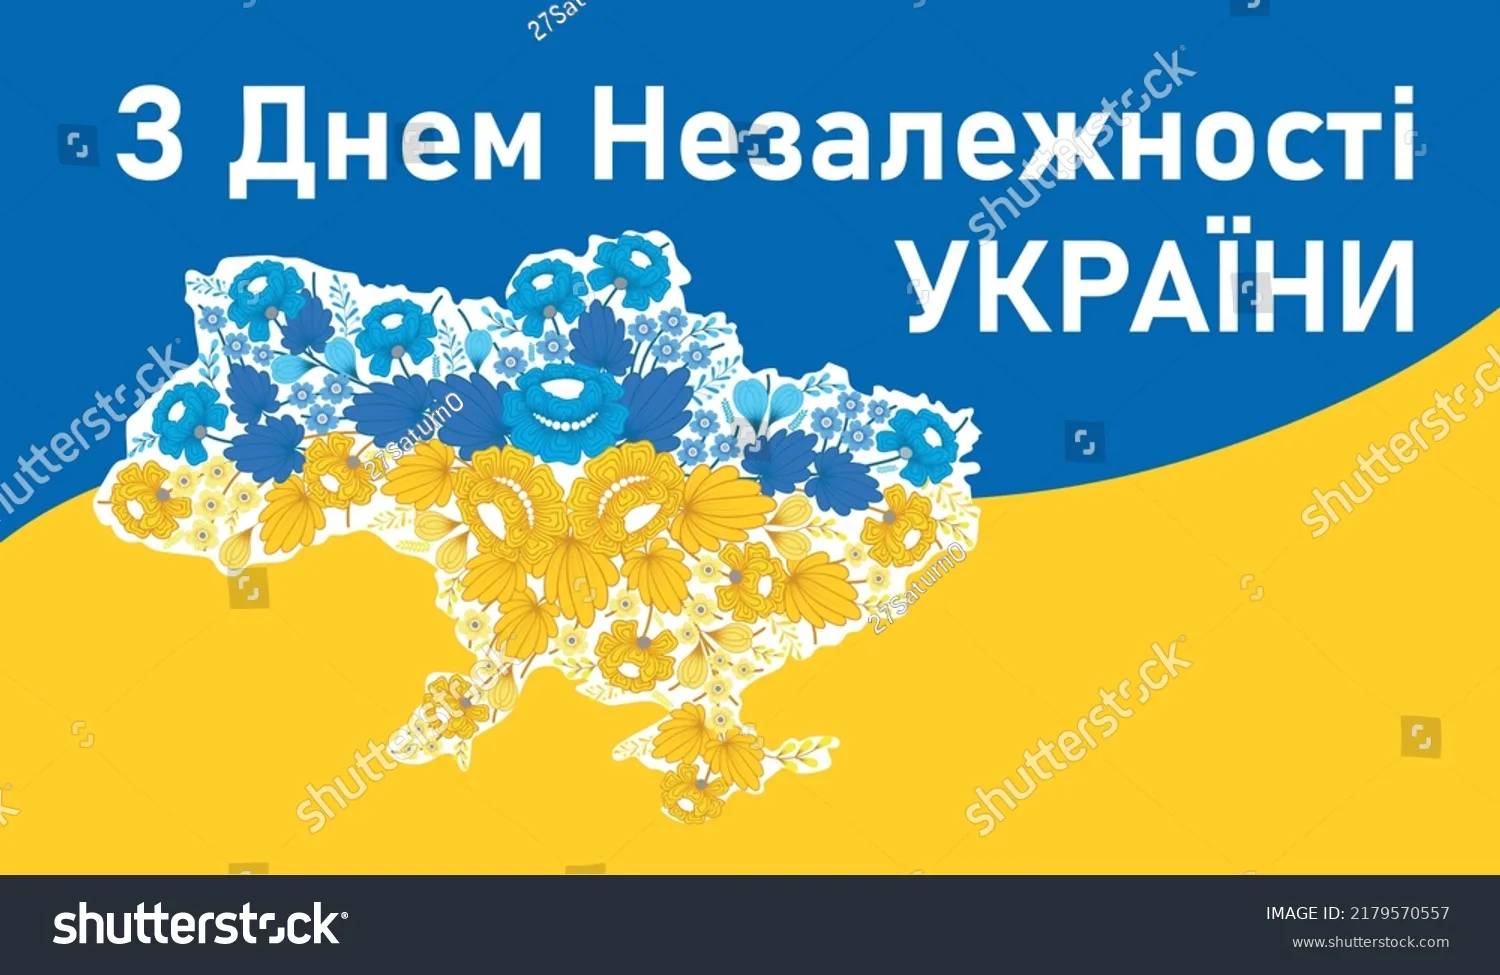 Фото Привітання з Днем незалежності України #23